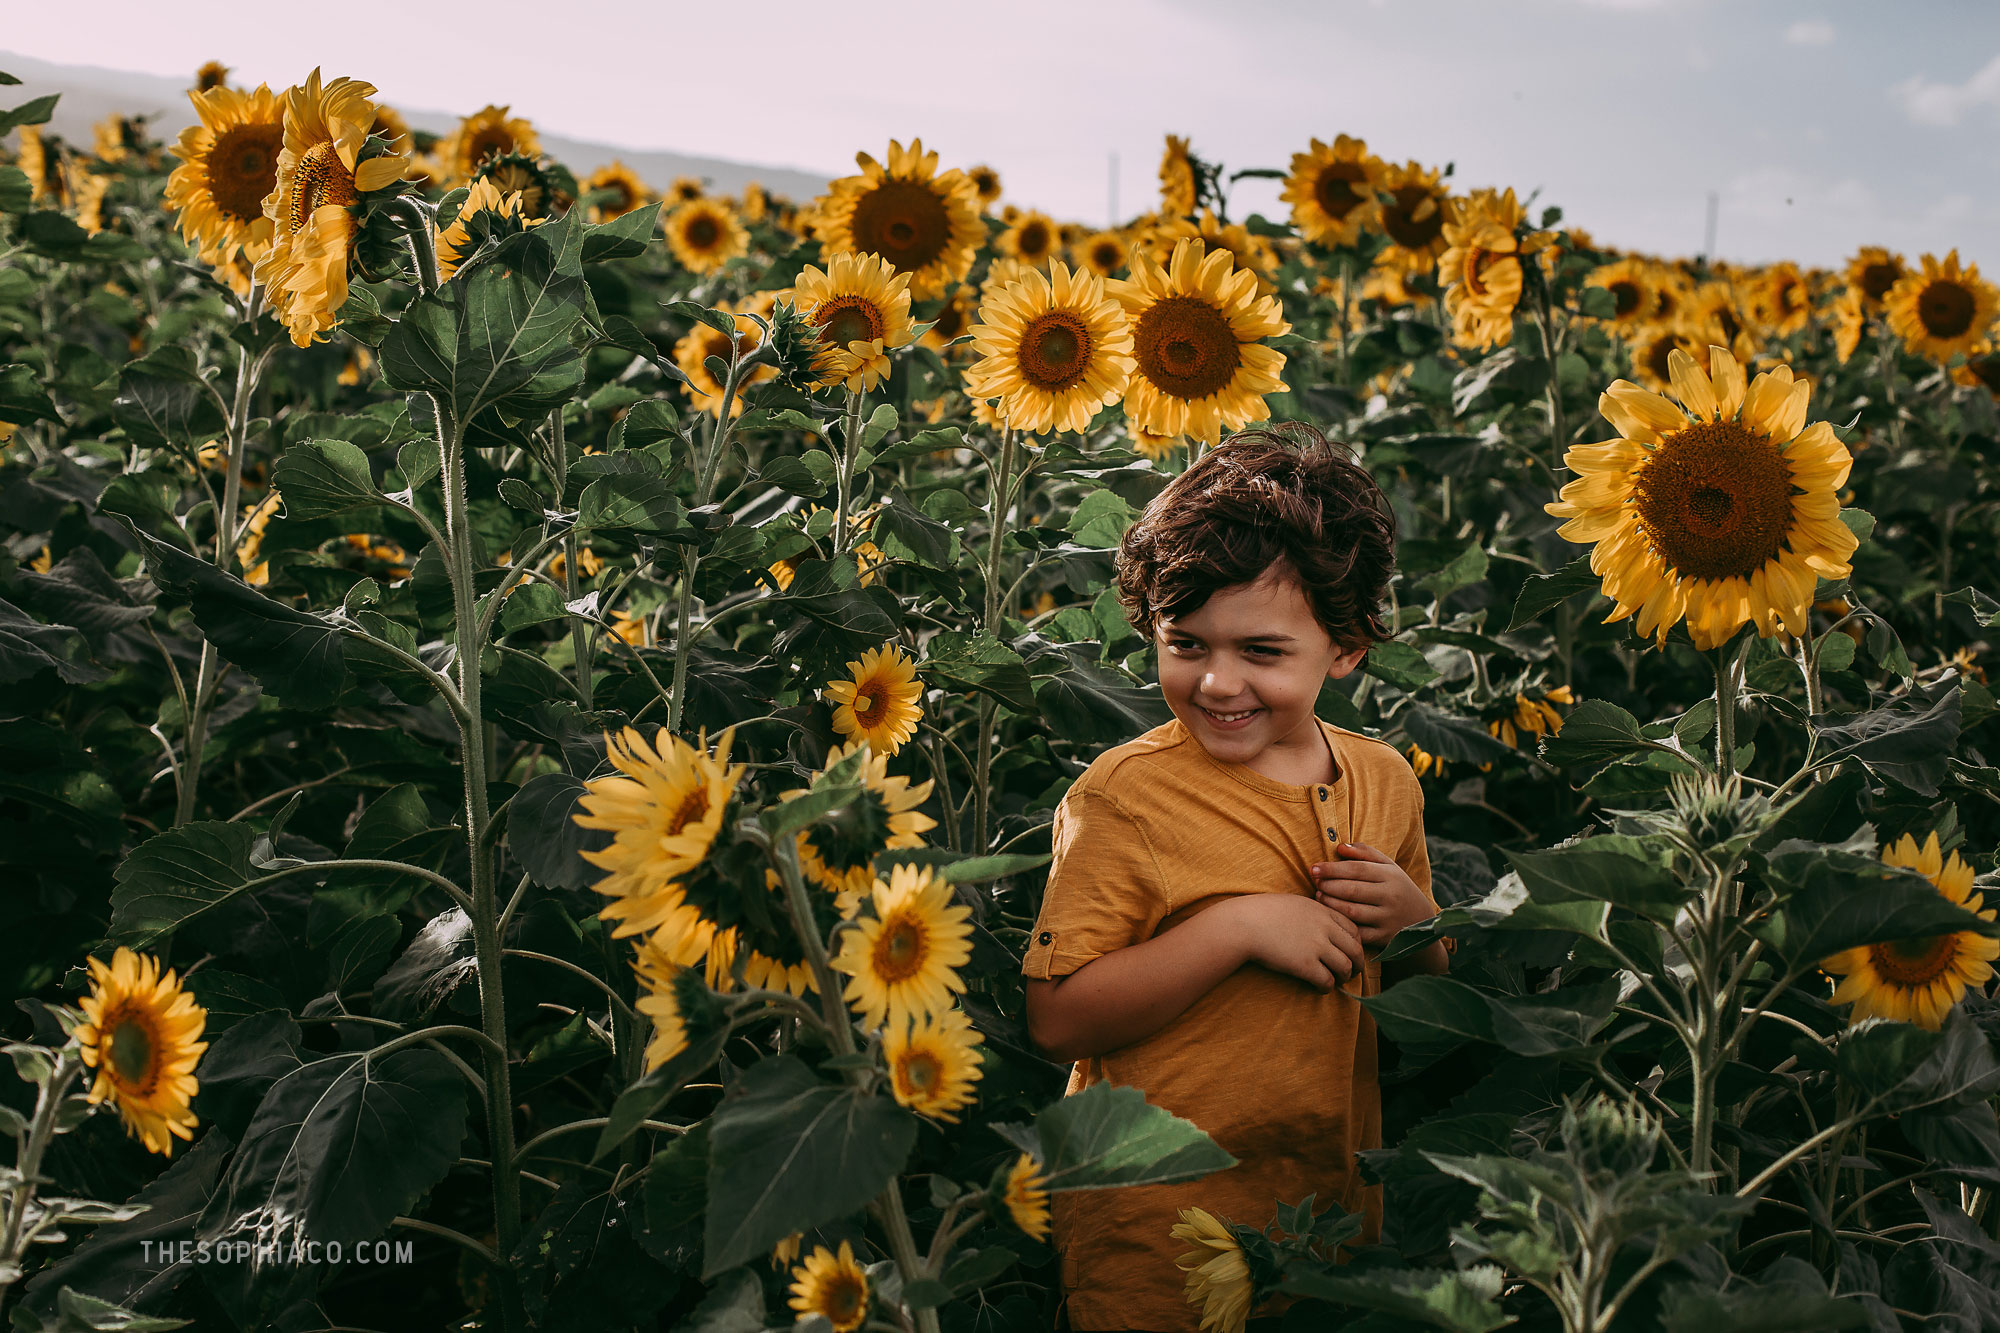 waialua-sunflowers-oahu-family-photography-08.jpg